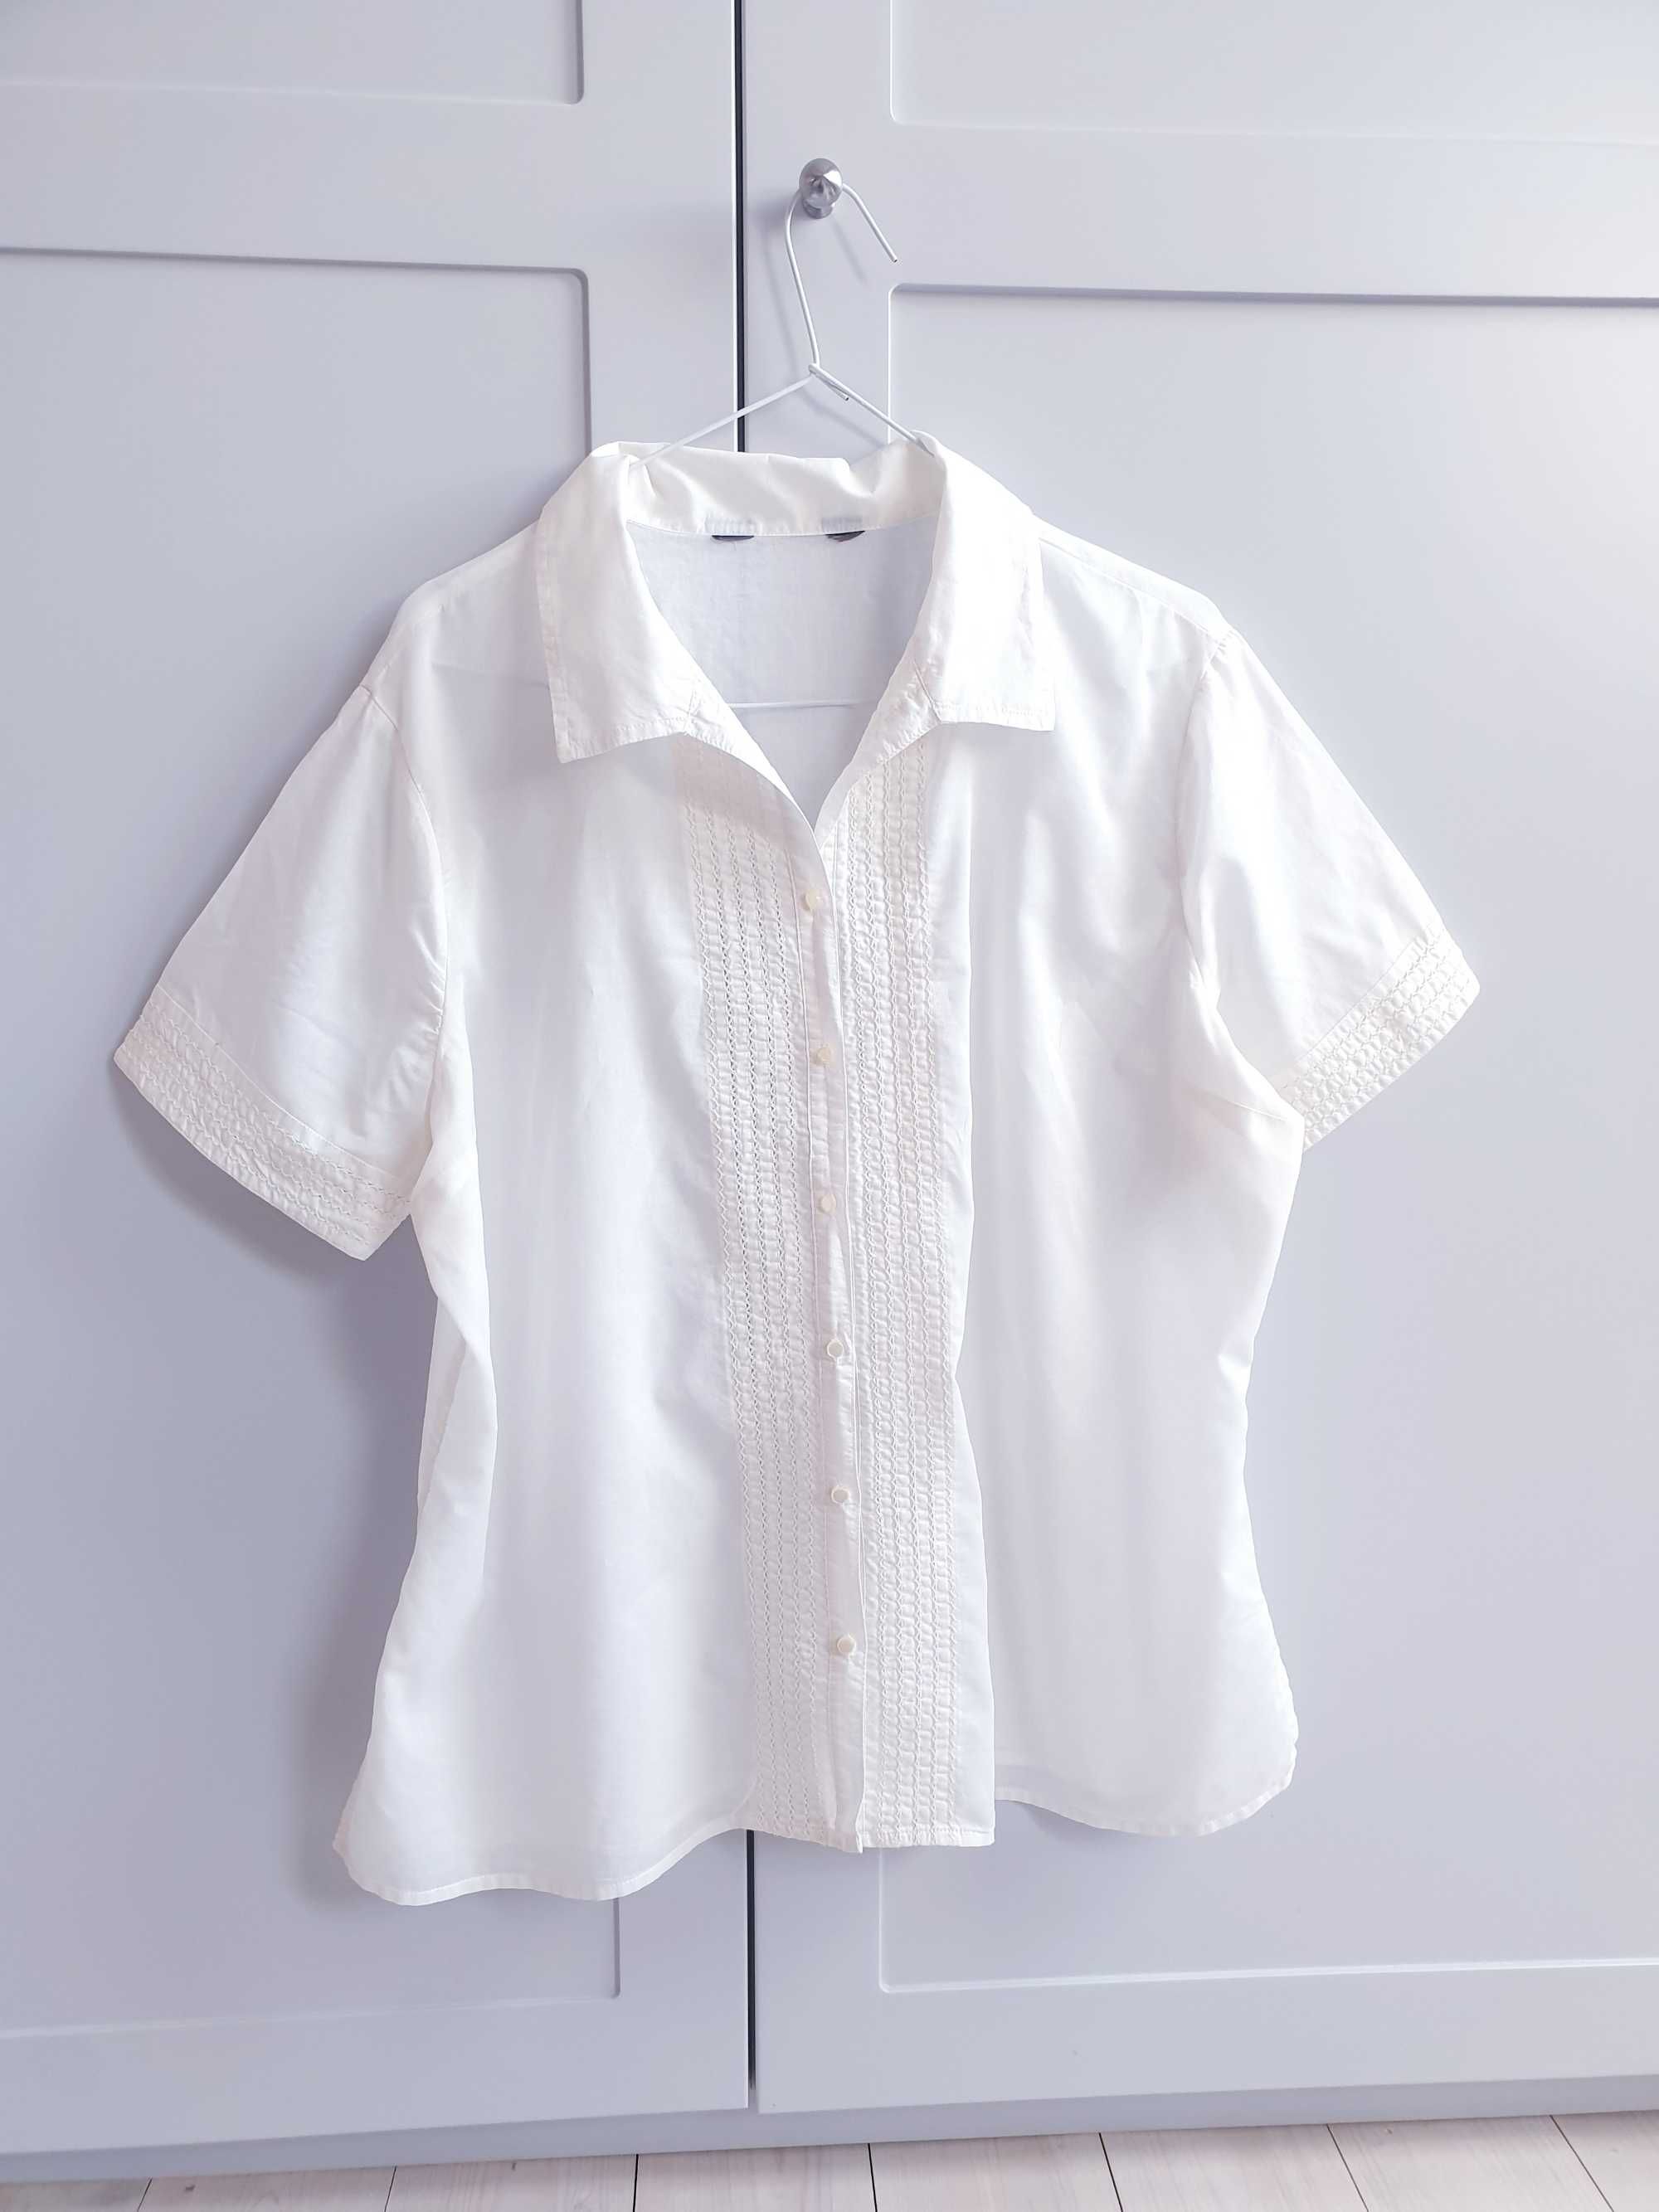 Kremowa haftowana bluzka z krótkim rękawem koszula vintage 42 44